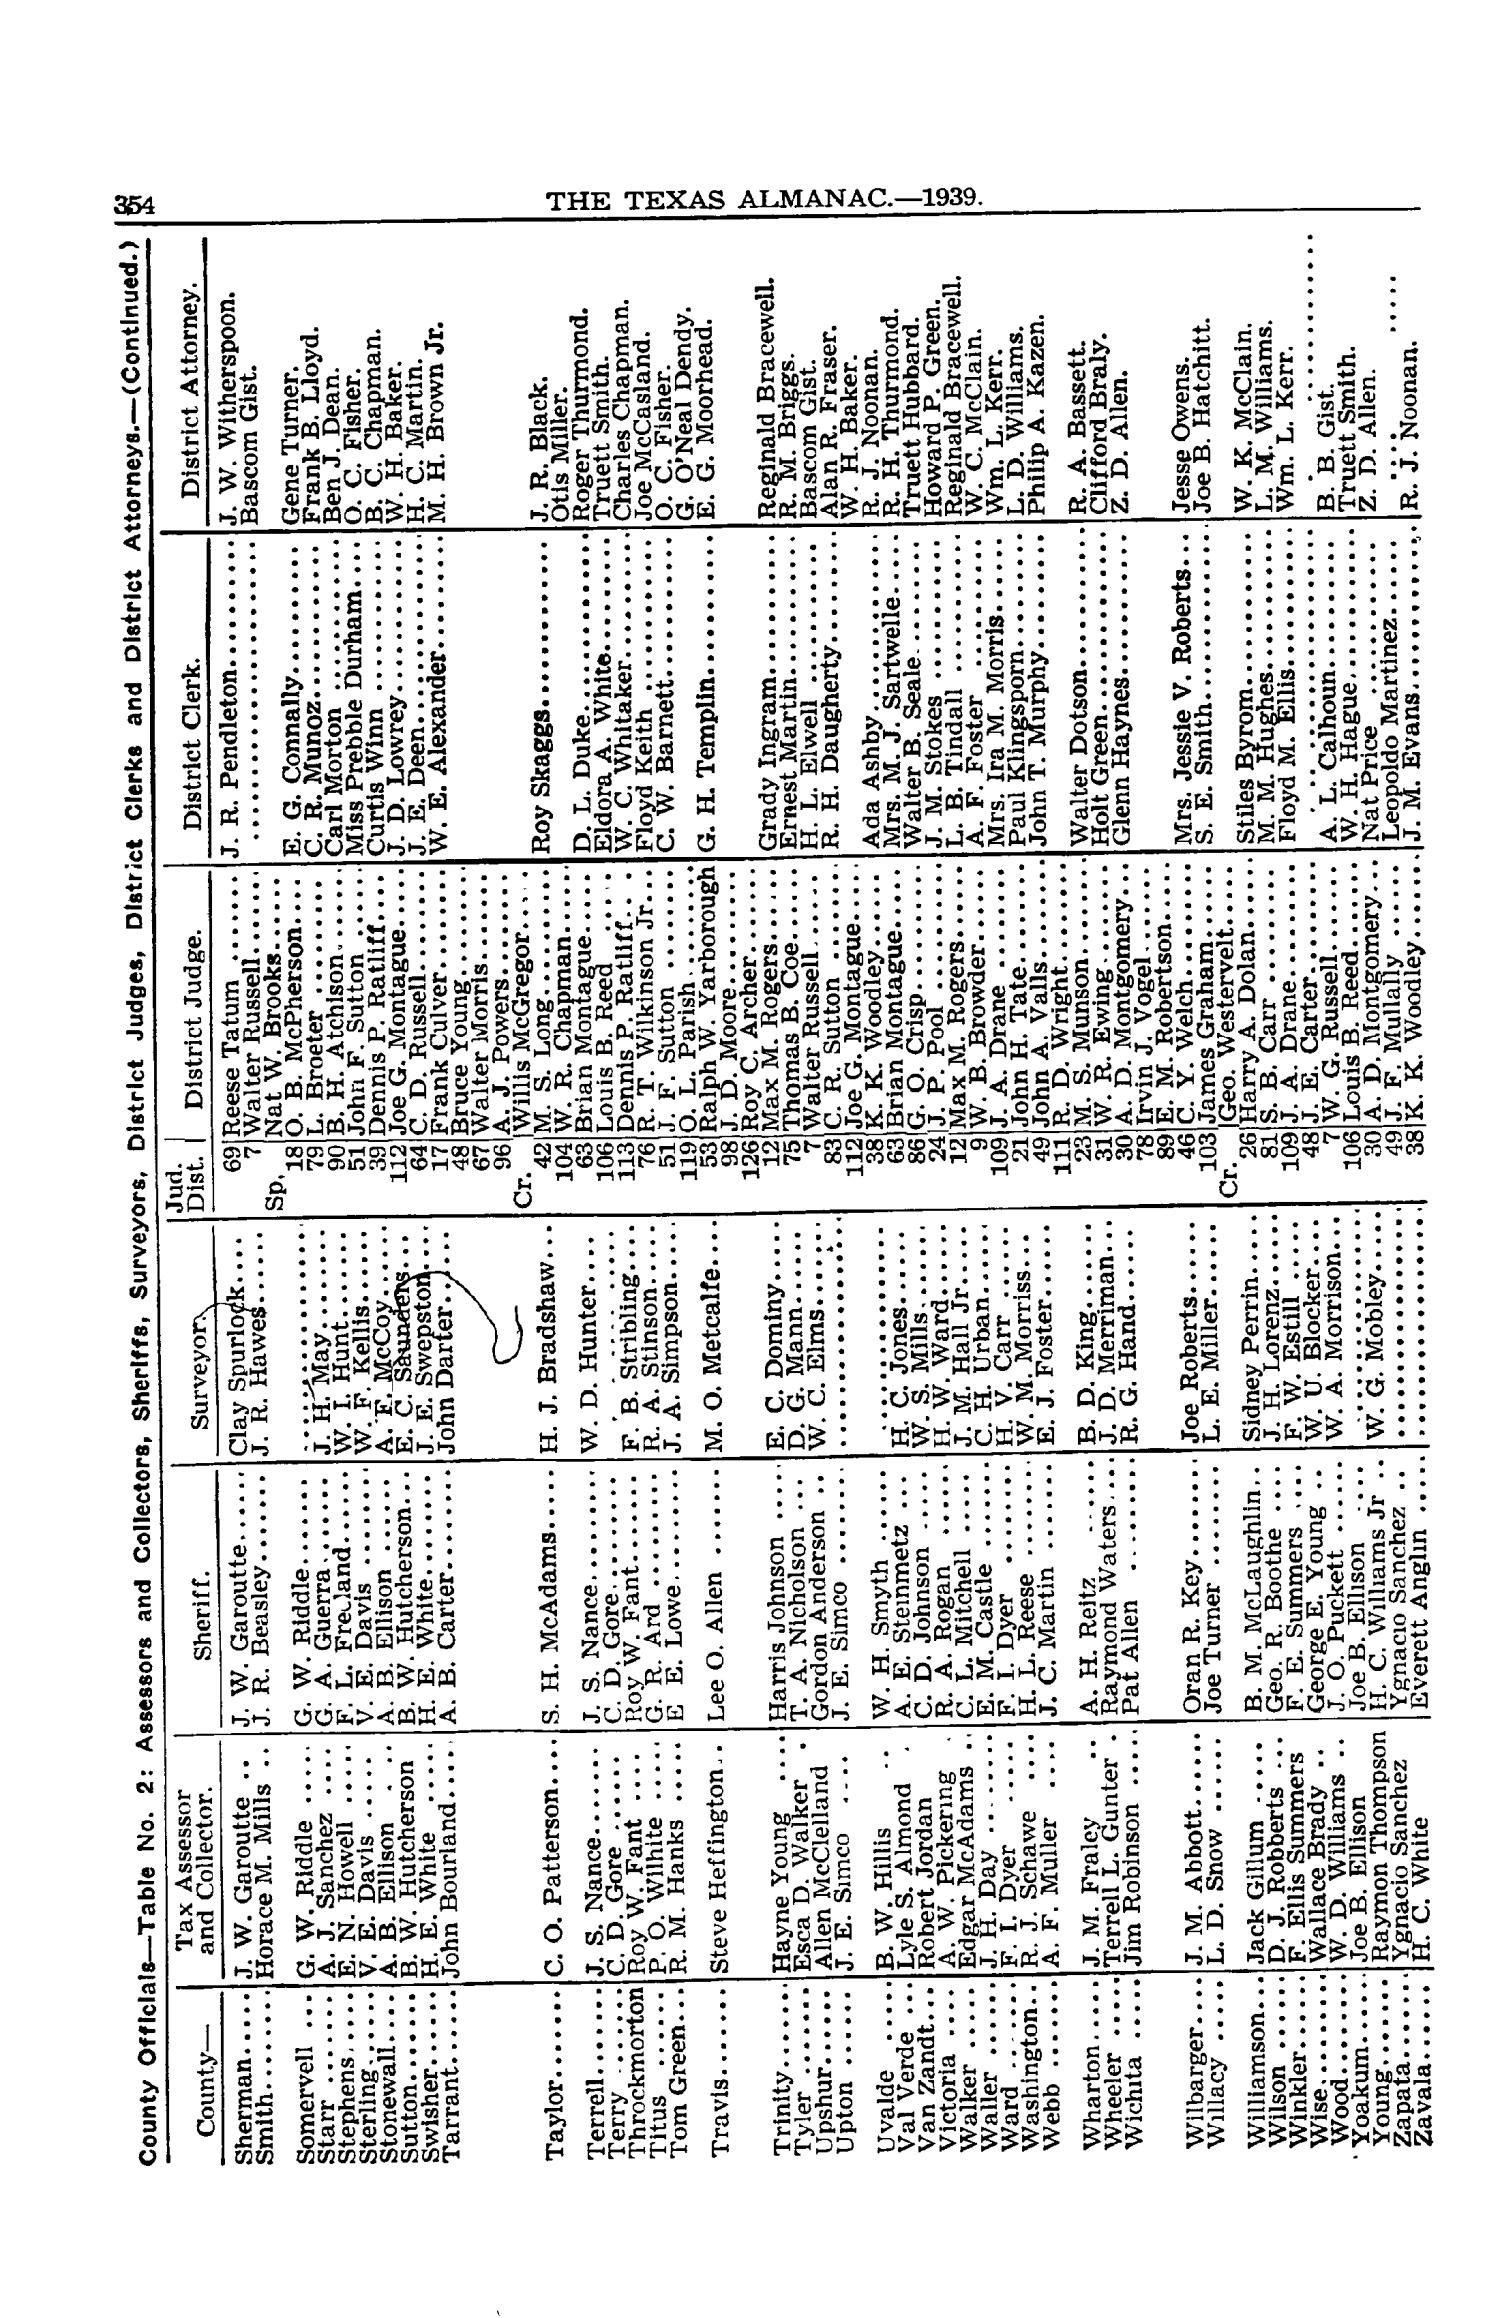 Texas Almanac, 1939-1940
                                                
                                                    354
                                                